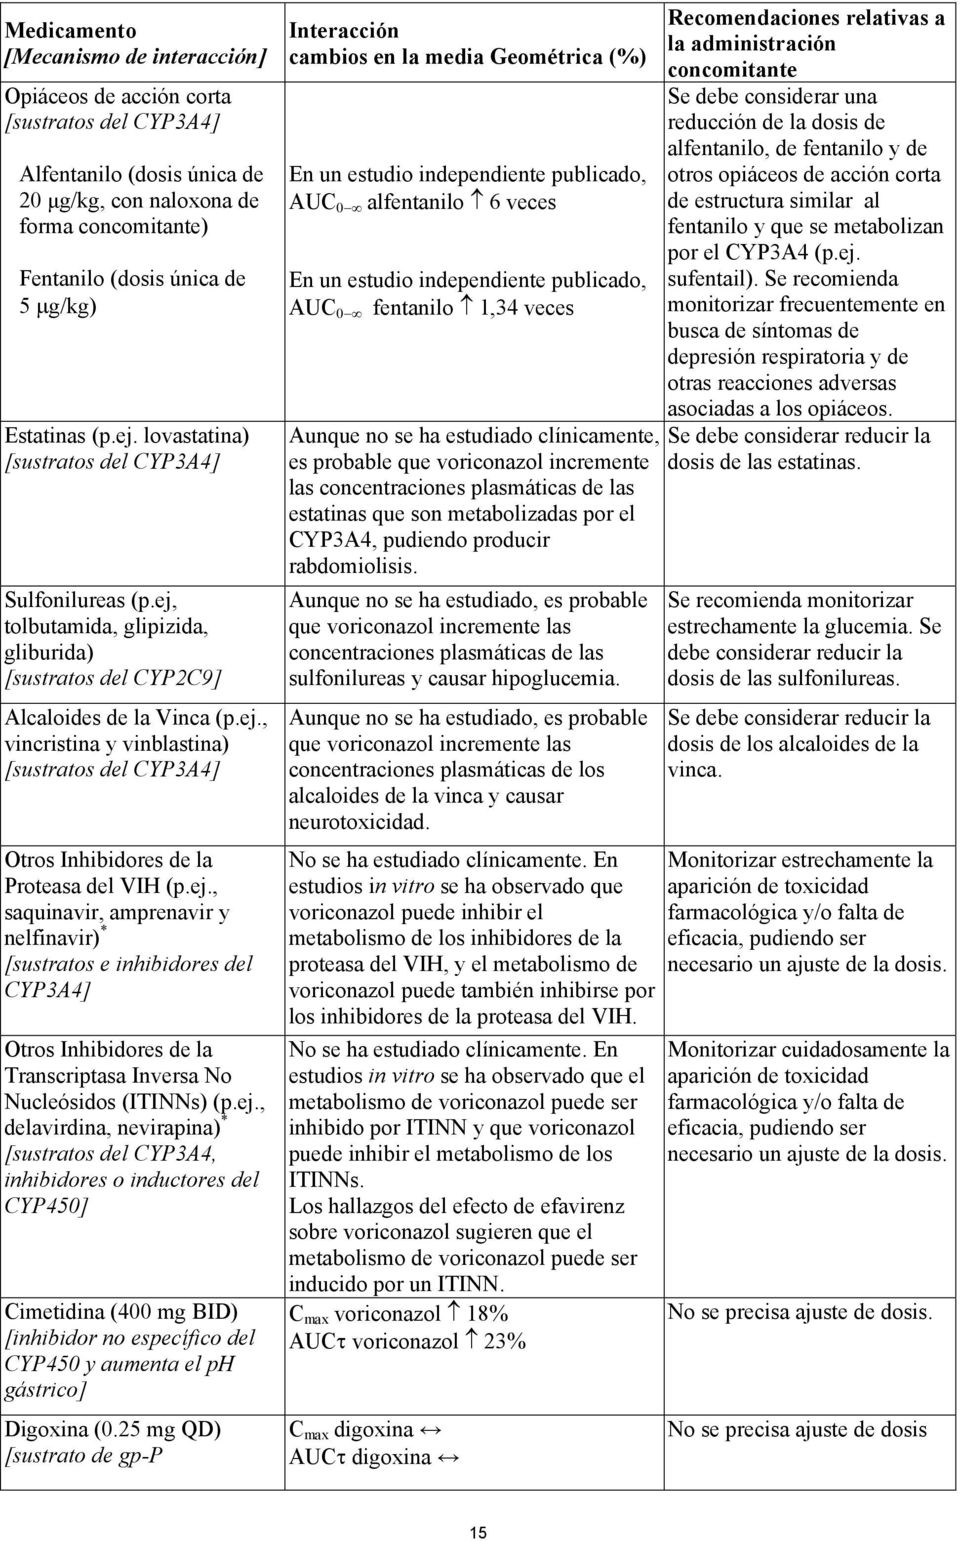 ej., saquinavir, amprenavir y nelfinavir) * [sustratos e inhibidores del CYP3A4] Otros Inhibidores de la Transcriptasa Inversa No Nucleósidos (ITINNs) (p.ej., delavirdina, nevirapina) * [sustratos del CYP3A4, inhibidores o inductores del CYP450] Cimetidina (400 mg BID) [inhibidor no específico del CYP450 y aumenta el ph gástrico] Digoxina (0.